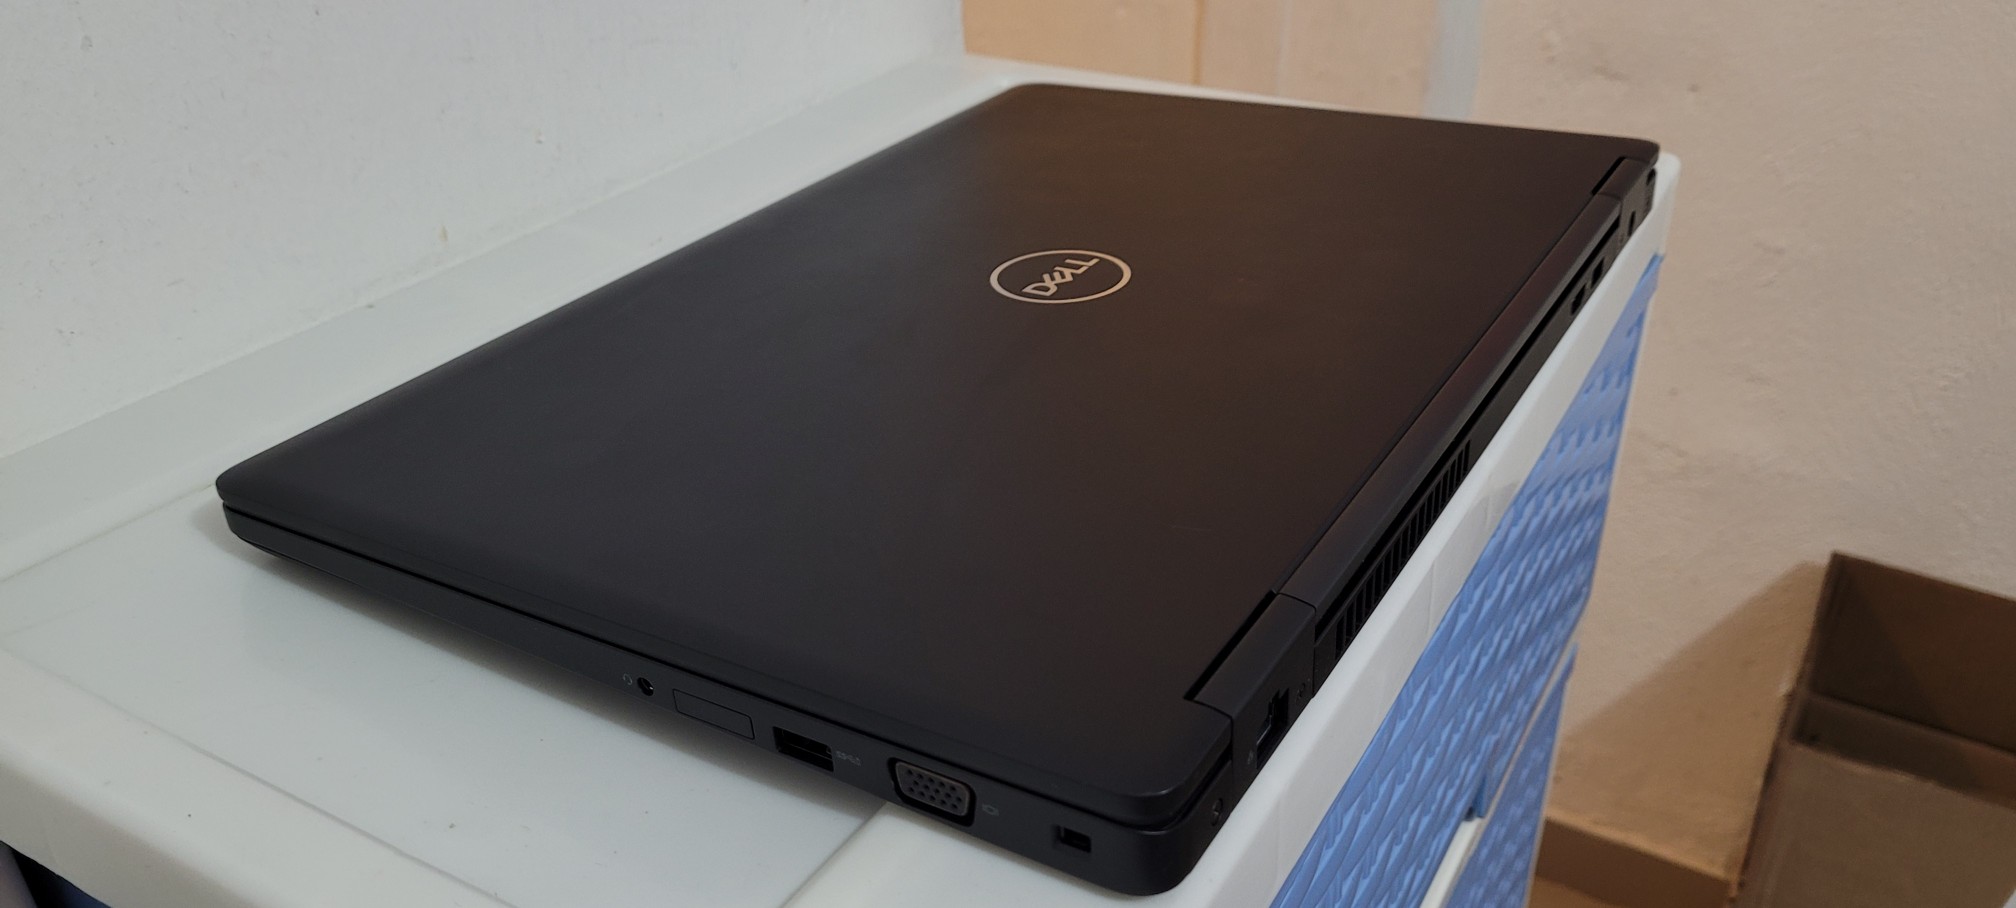 computadoras y laptops - Dell 5580 17 Pulg Core i5 7ma Gen Ram 8gb ddr4 Disco 256gb SSD New 2